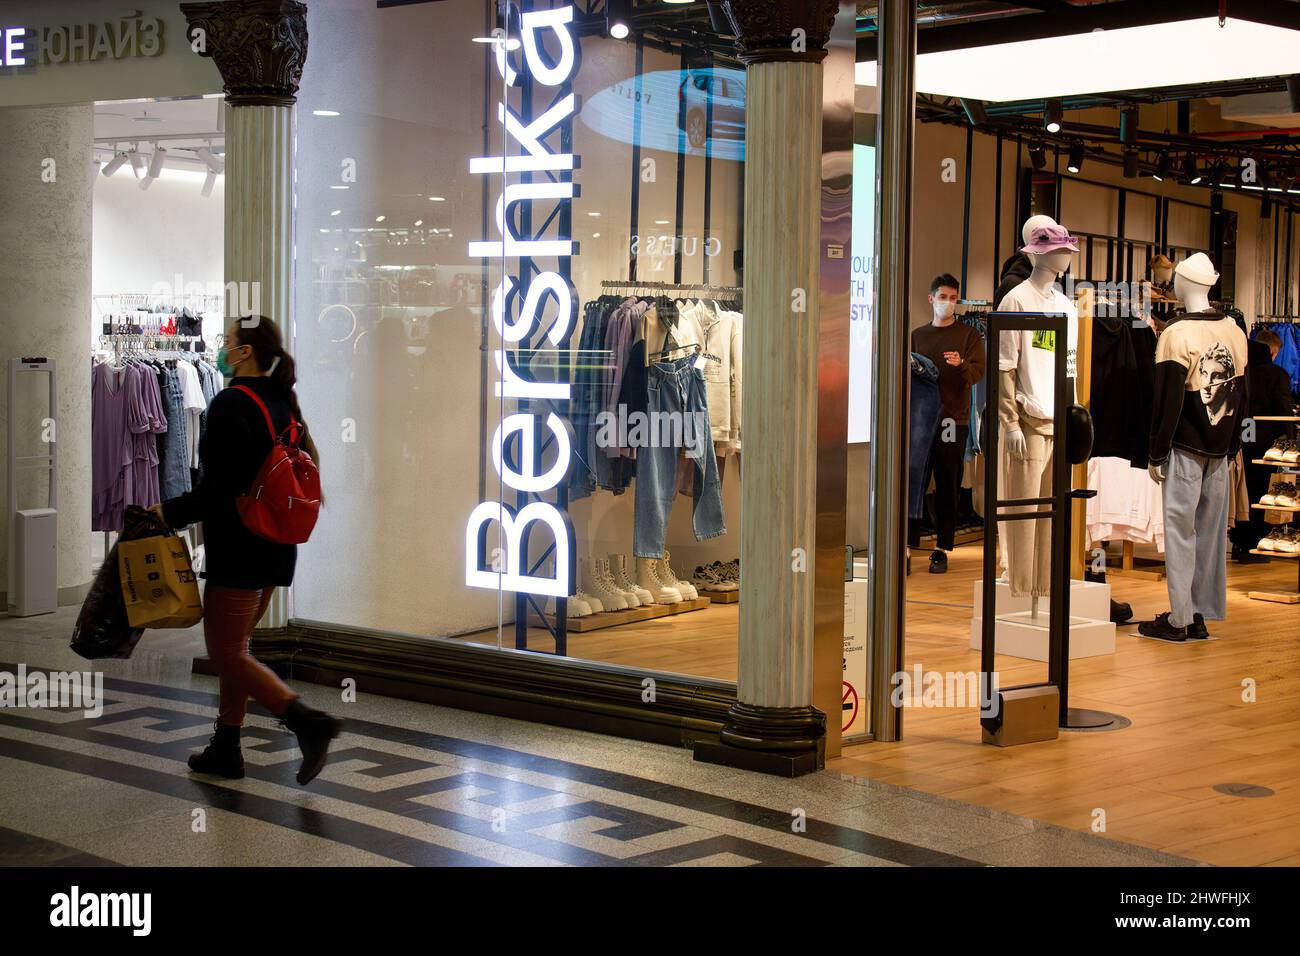 Una mujer por la boutique Bershka en Moscú. El minorista de moda español Inditex, que posee marcas como Zara, Bershka, Pull&Bear, Massimo Dutti, Stradivarius, Y otros, anunciaron que iba a detener